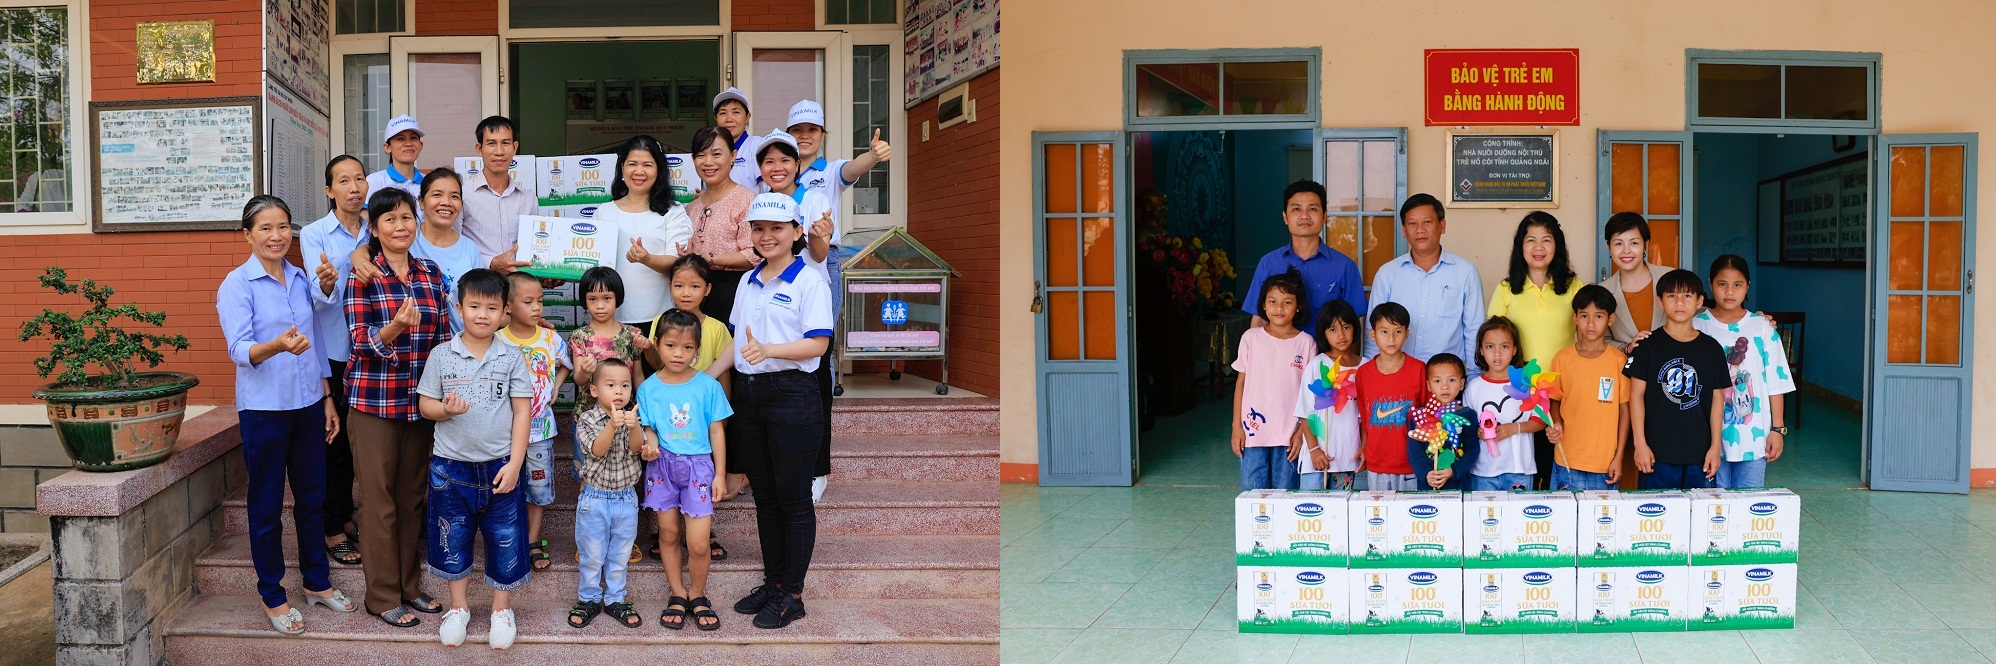 Chương trình Quỹ sữa Vươn cao Việt Nam trao tặng sữa cho trẻ em tỉnh Quảng Ngãi và Bình Định - Ảnh: Vinamilk